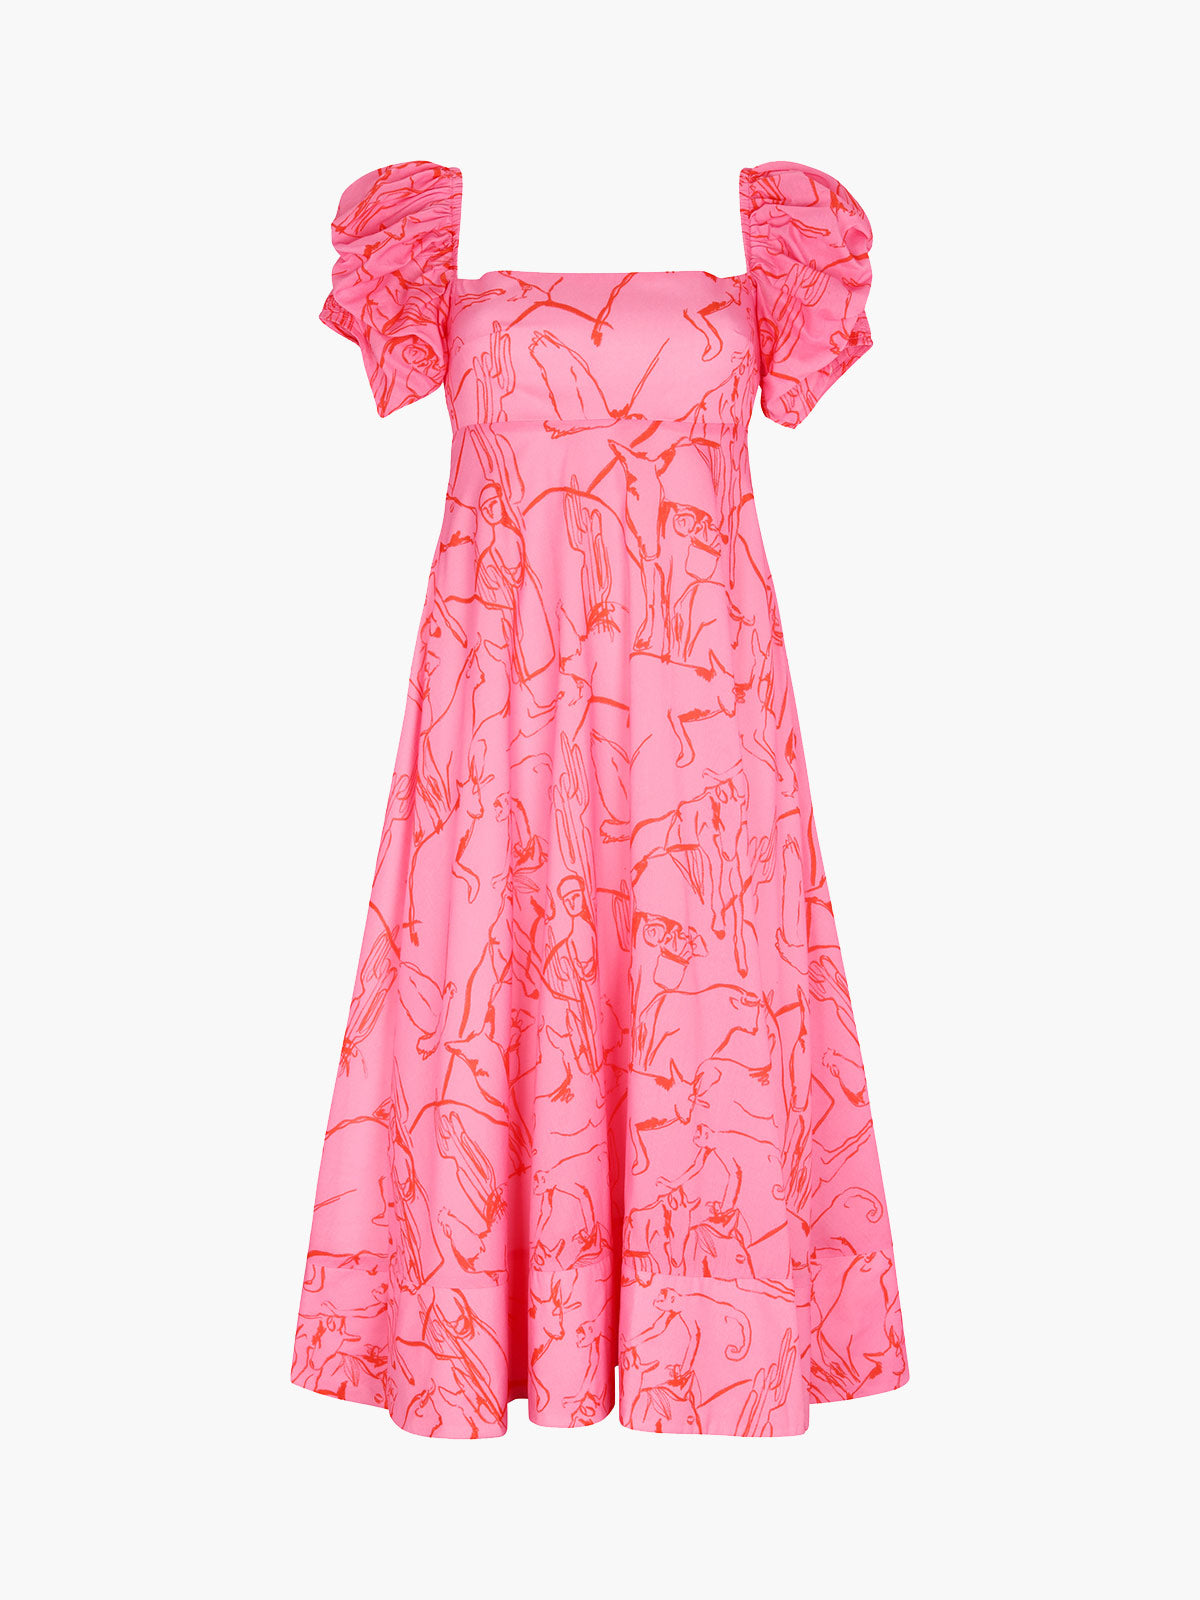 Calla Dress | Caballos Rosa Print Calla Dress | Caballos Rosa Print